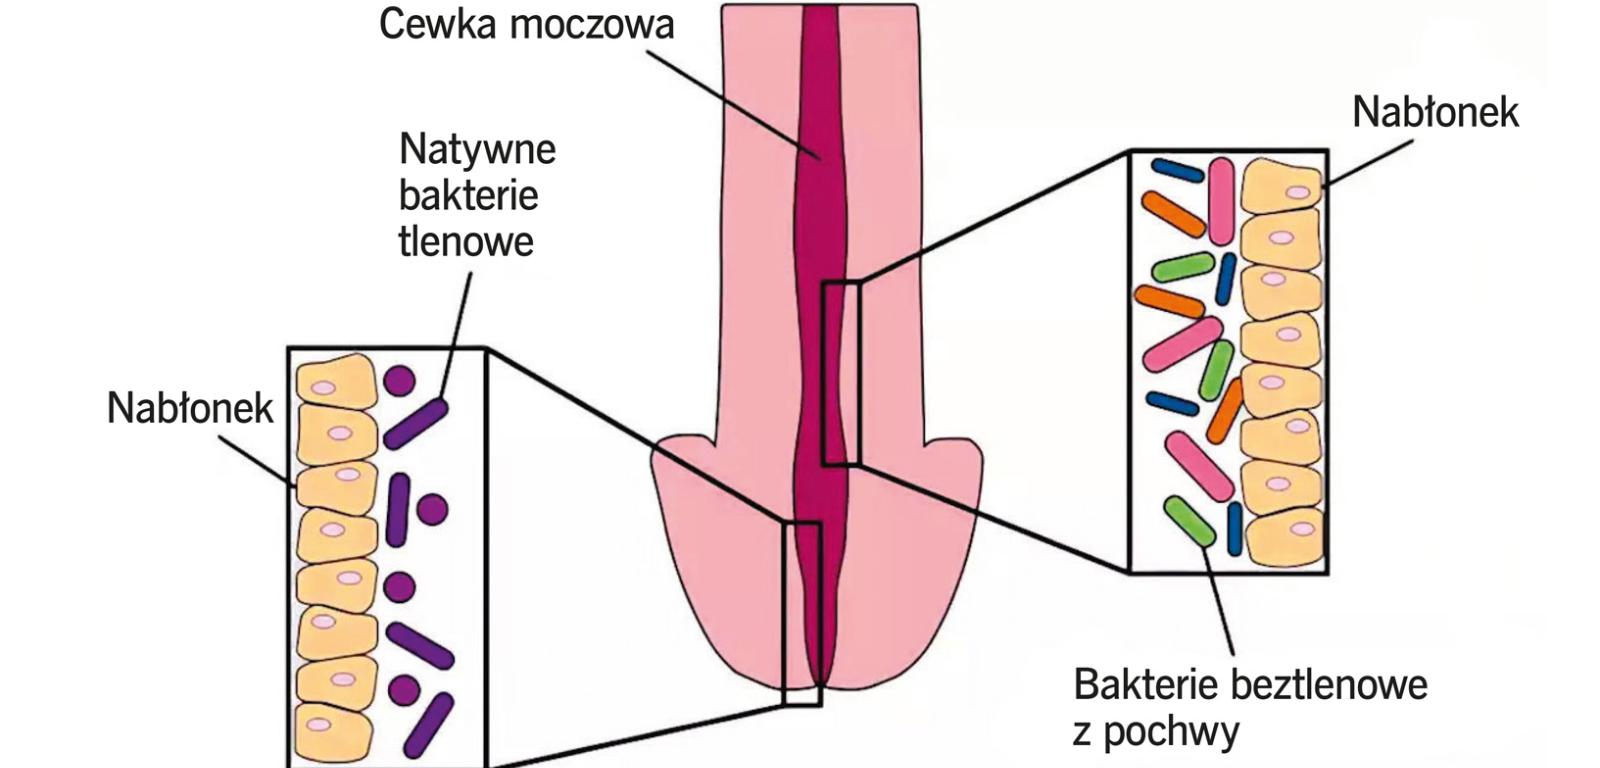 Populacje bakterii zasiedlające różne rejony męskiej cewki moczowej.